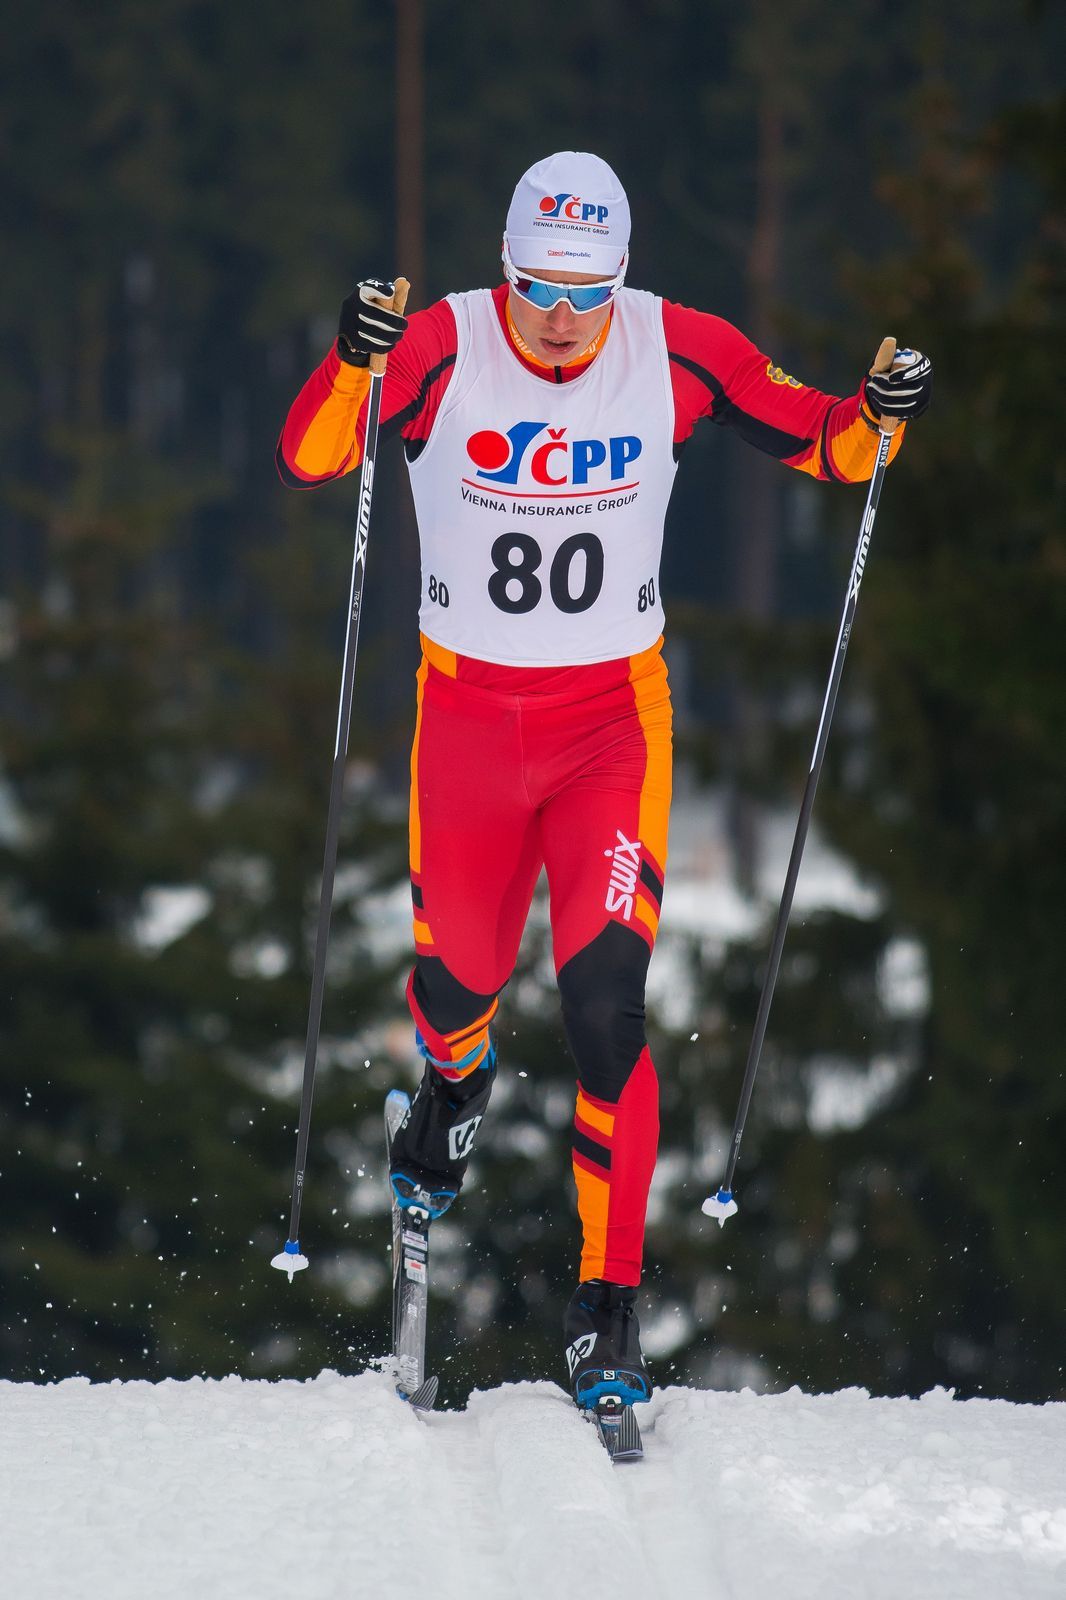 Michal Novák na MČR v běhu na lyžích